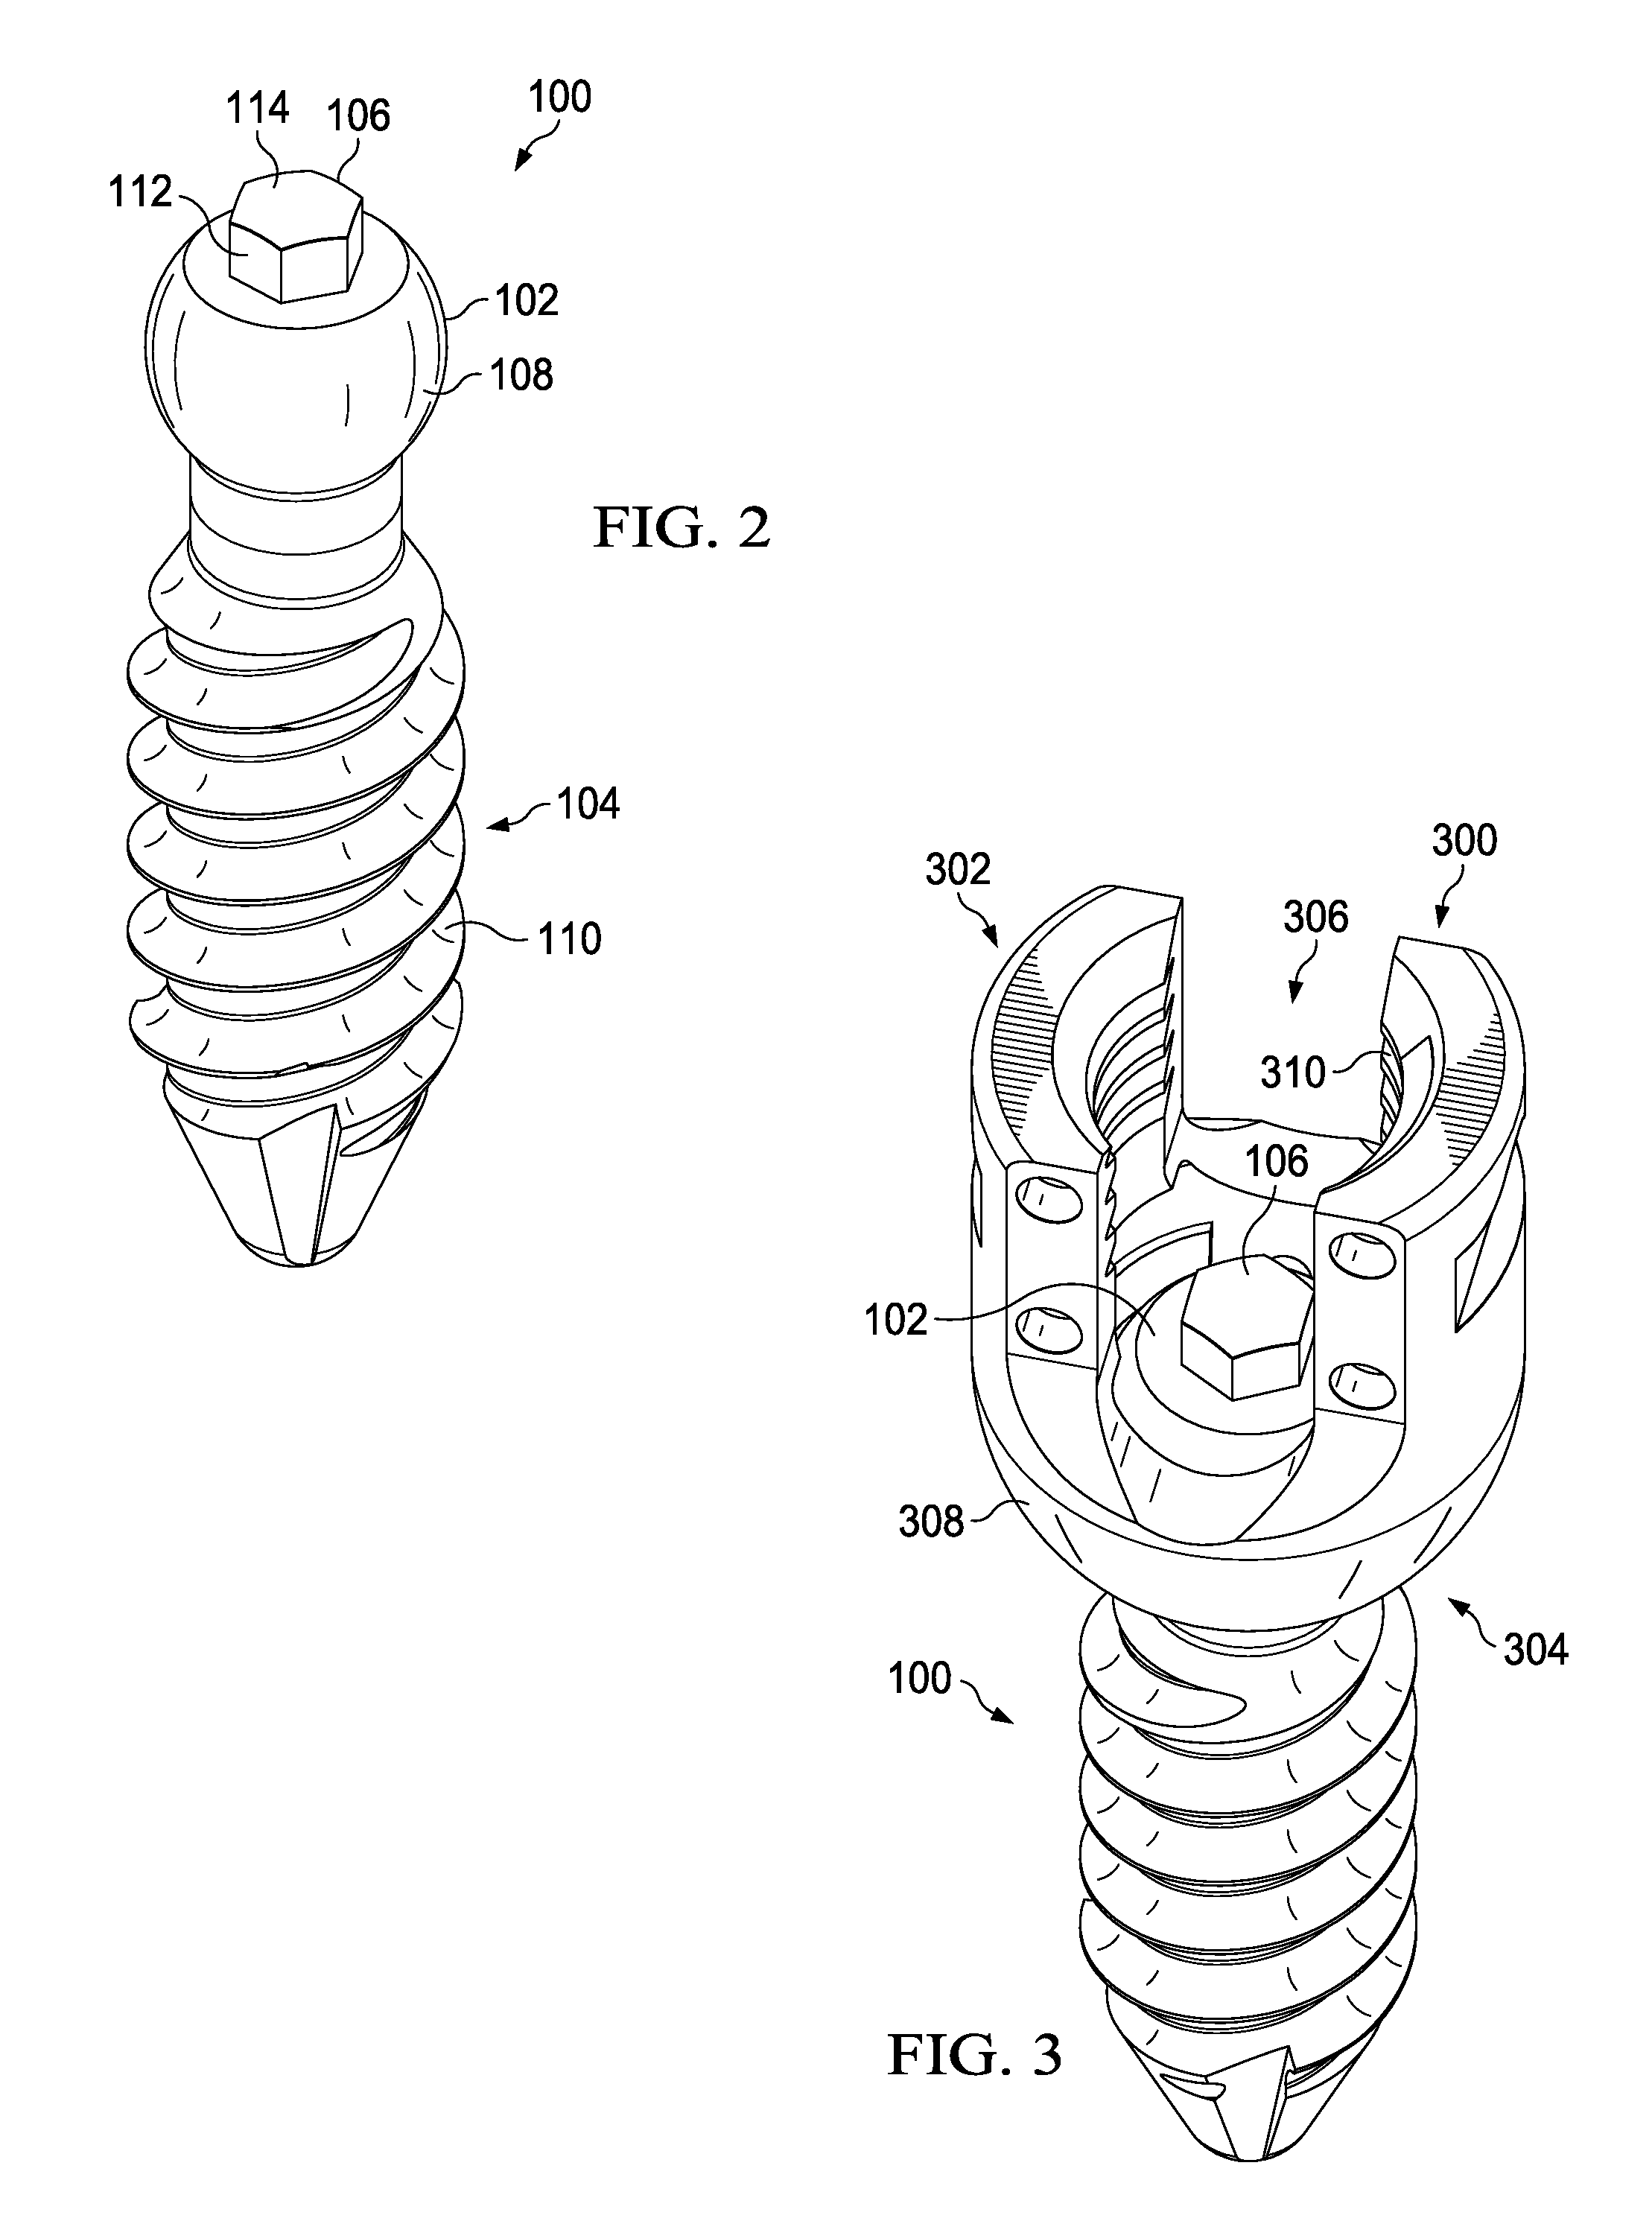 Modular pedicle screw